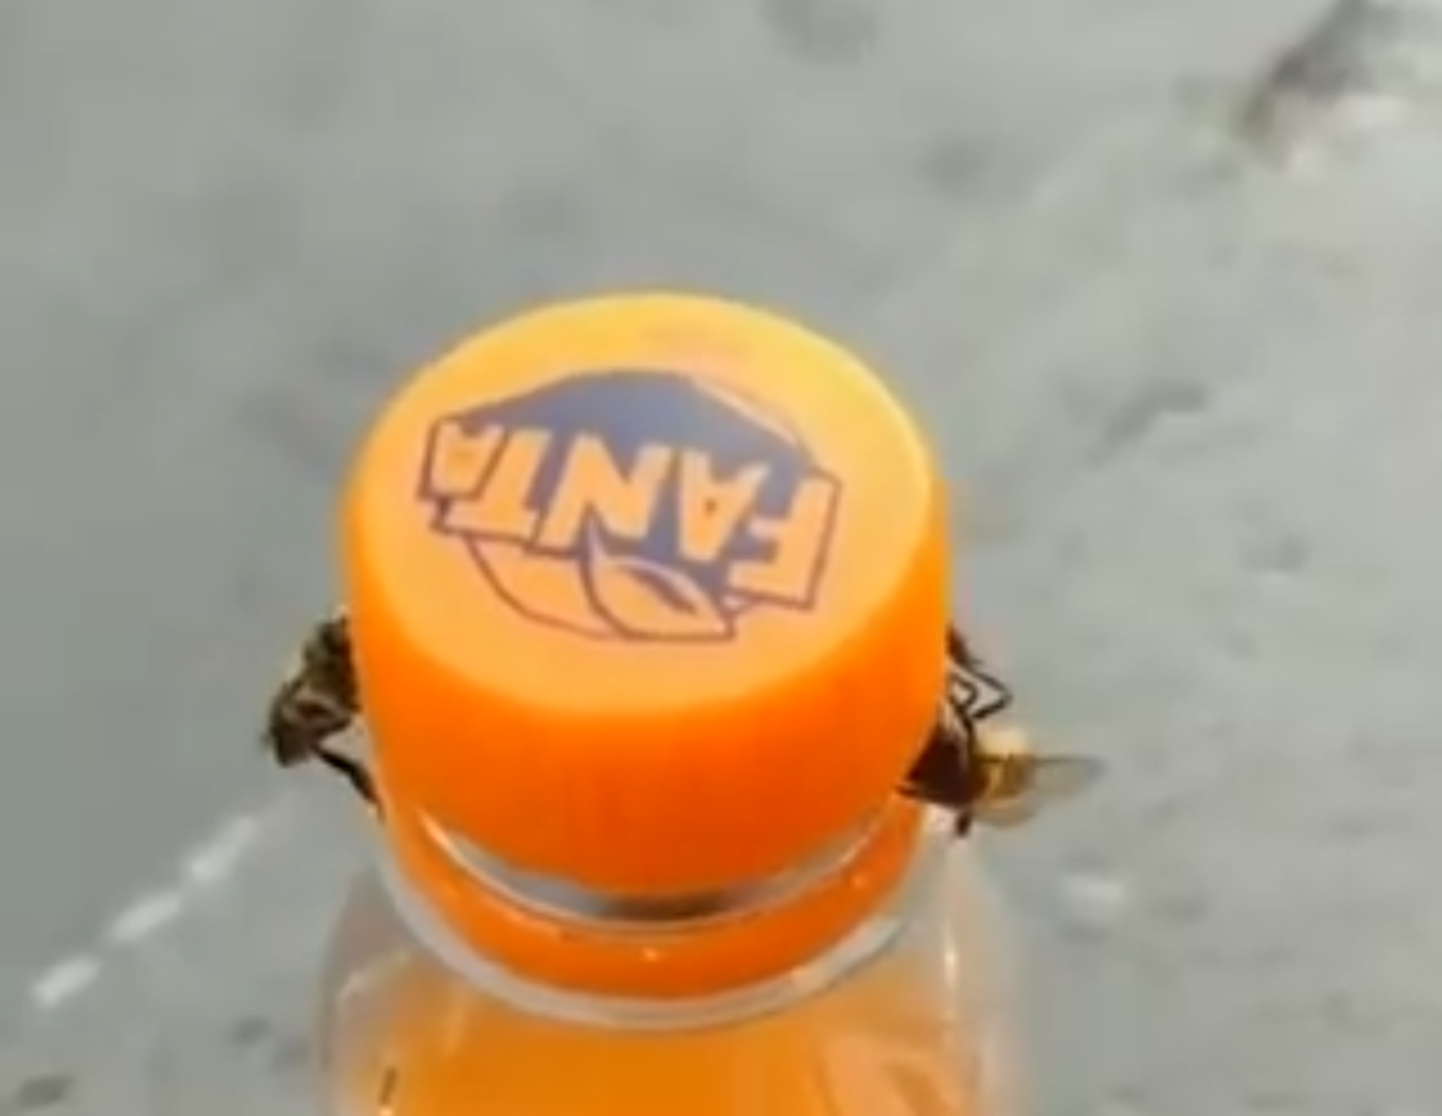 Mesilased eemaldavad Fanta pudelilt korgi.